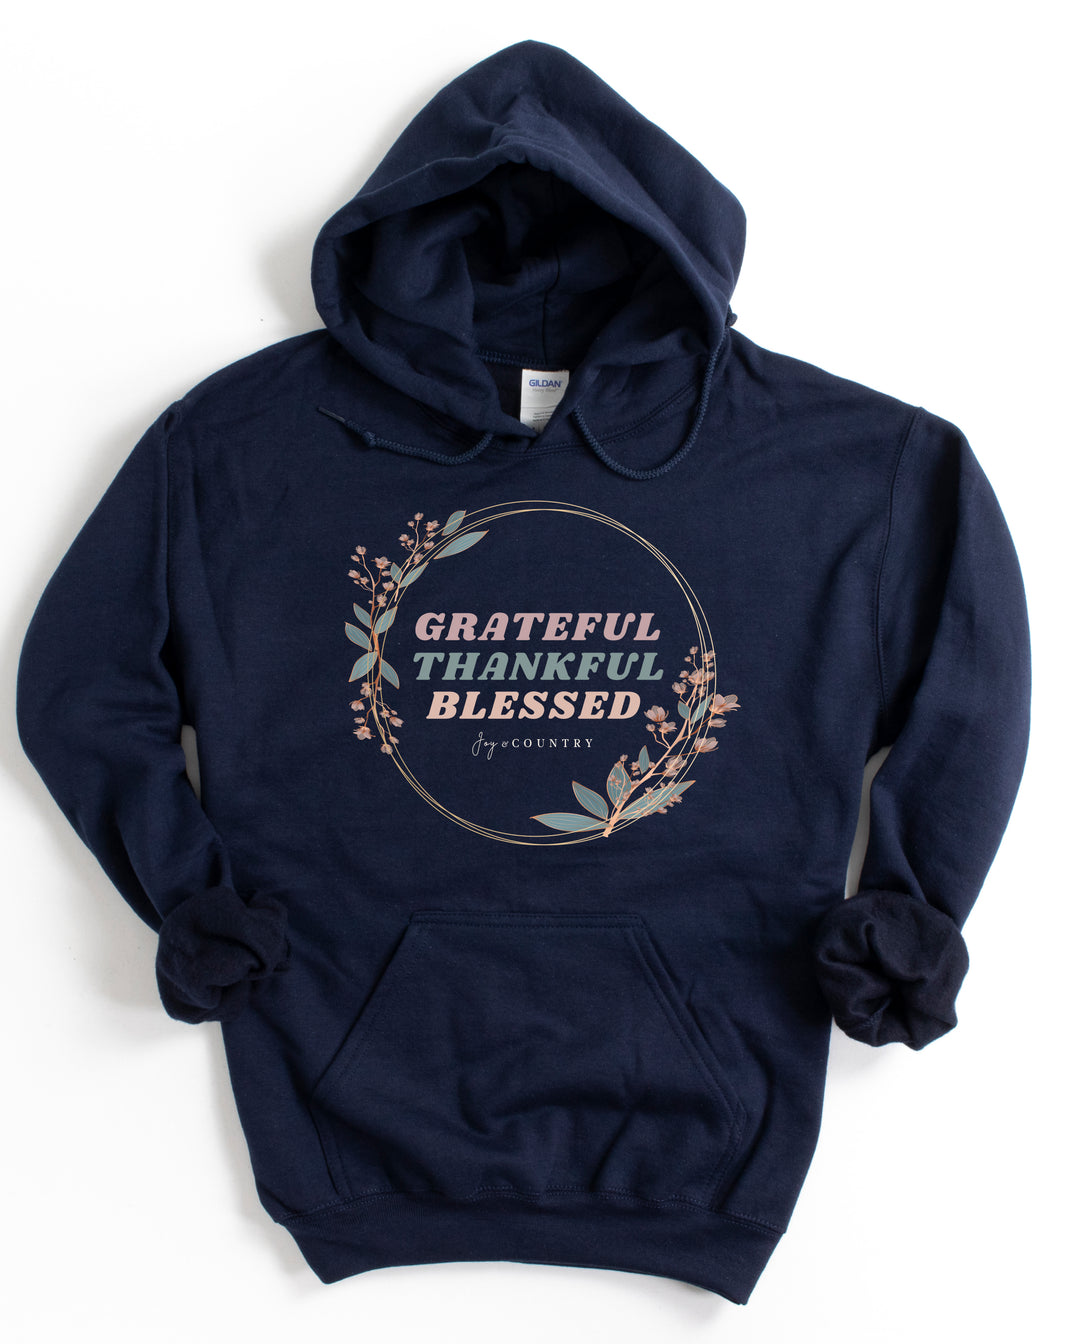 Grateful, Thankful, Blessed - Unisex Hoodie Sweatshirt - Joy & Country